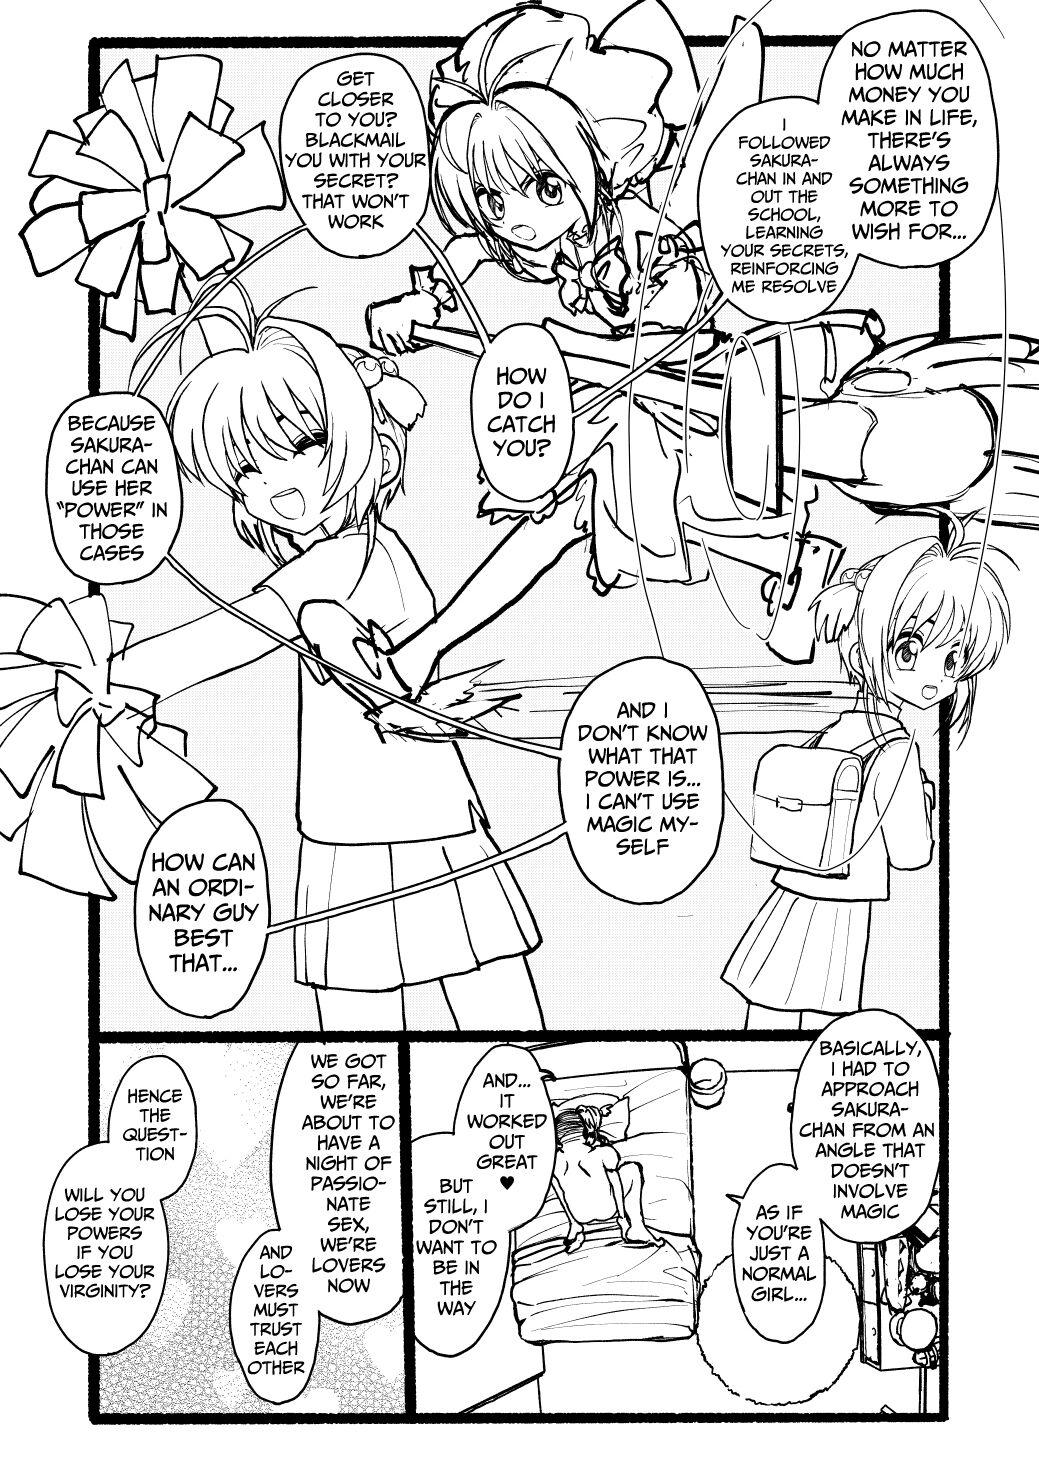 Sakura-chan Kouin Manga 75